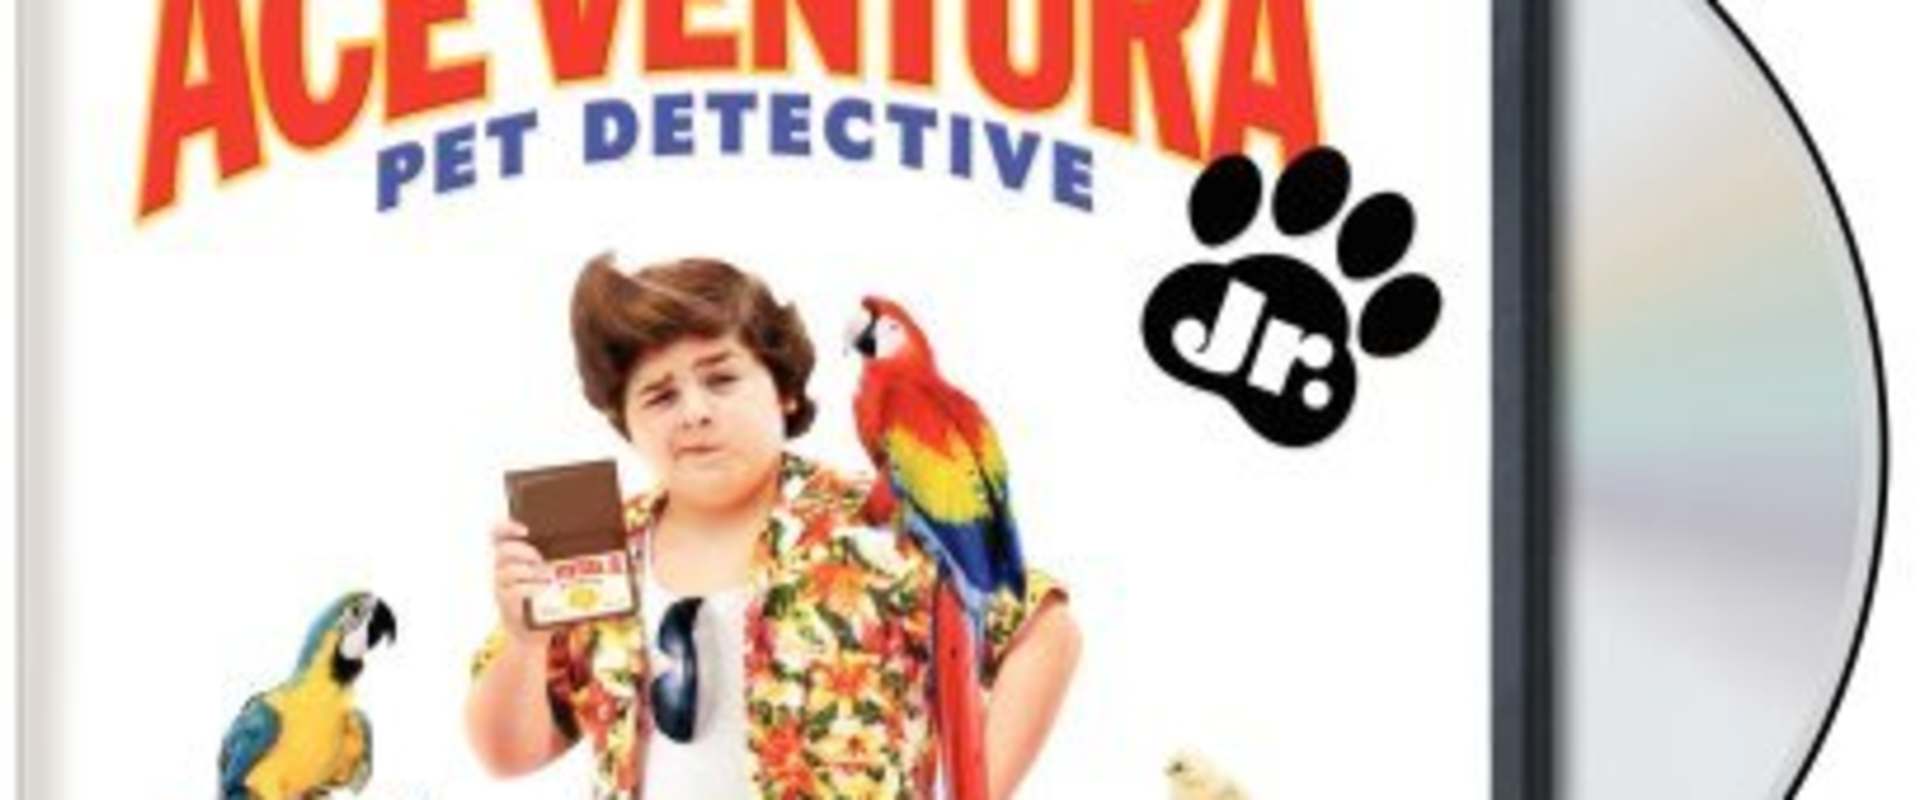 Ace Ventura: Pet Detective Jr. background 1